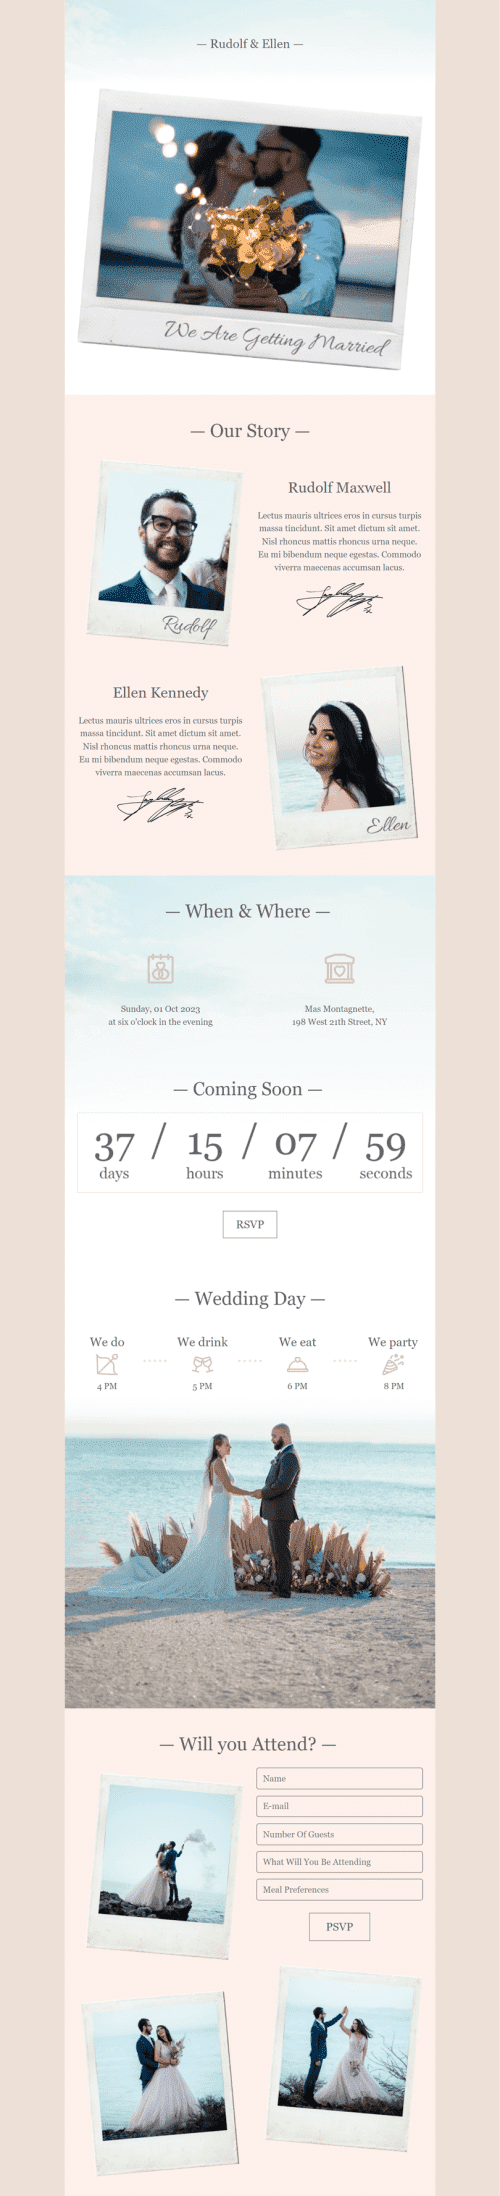 Hochzeit E-Mail-Vorlage «Wir werden heiraten» für Fotografie-Branche Desktop-Ansicht